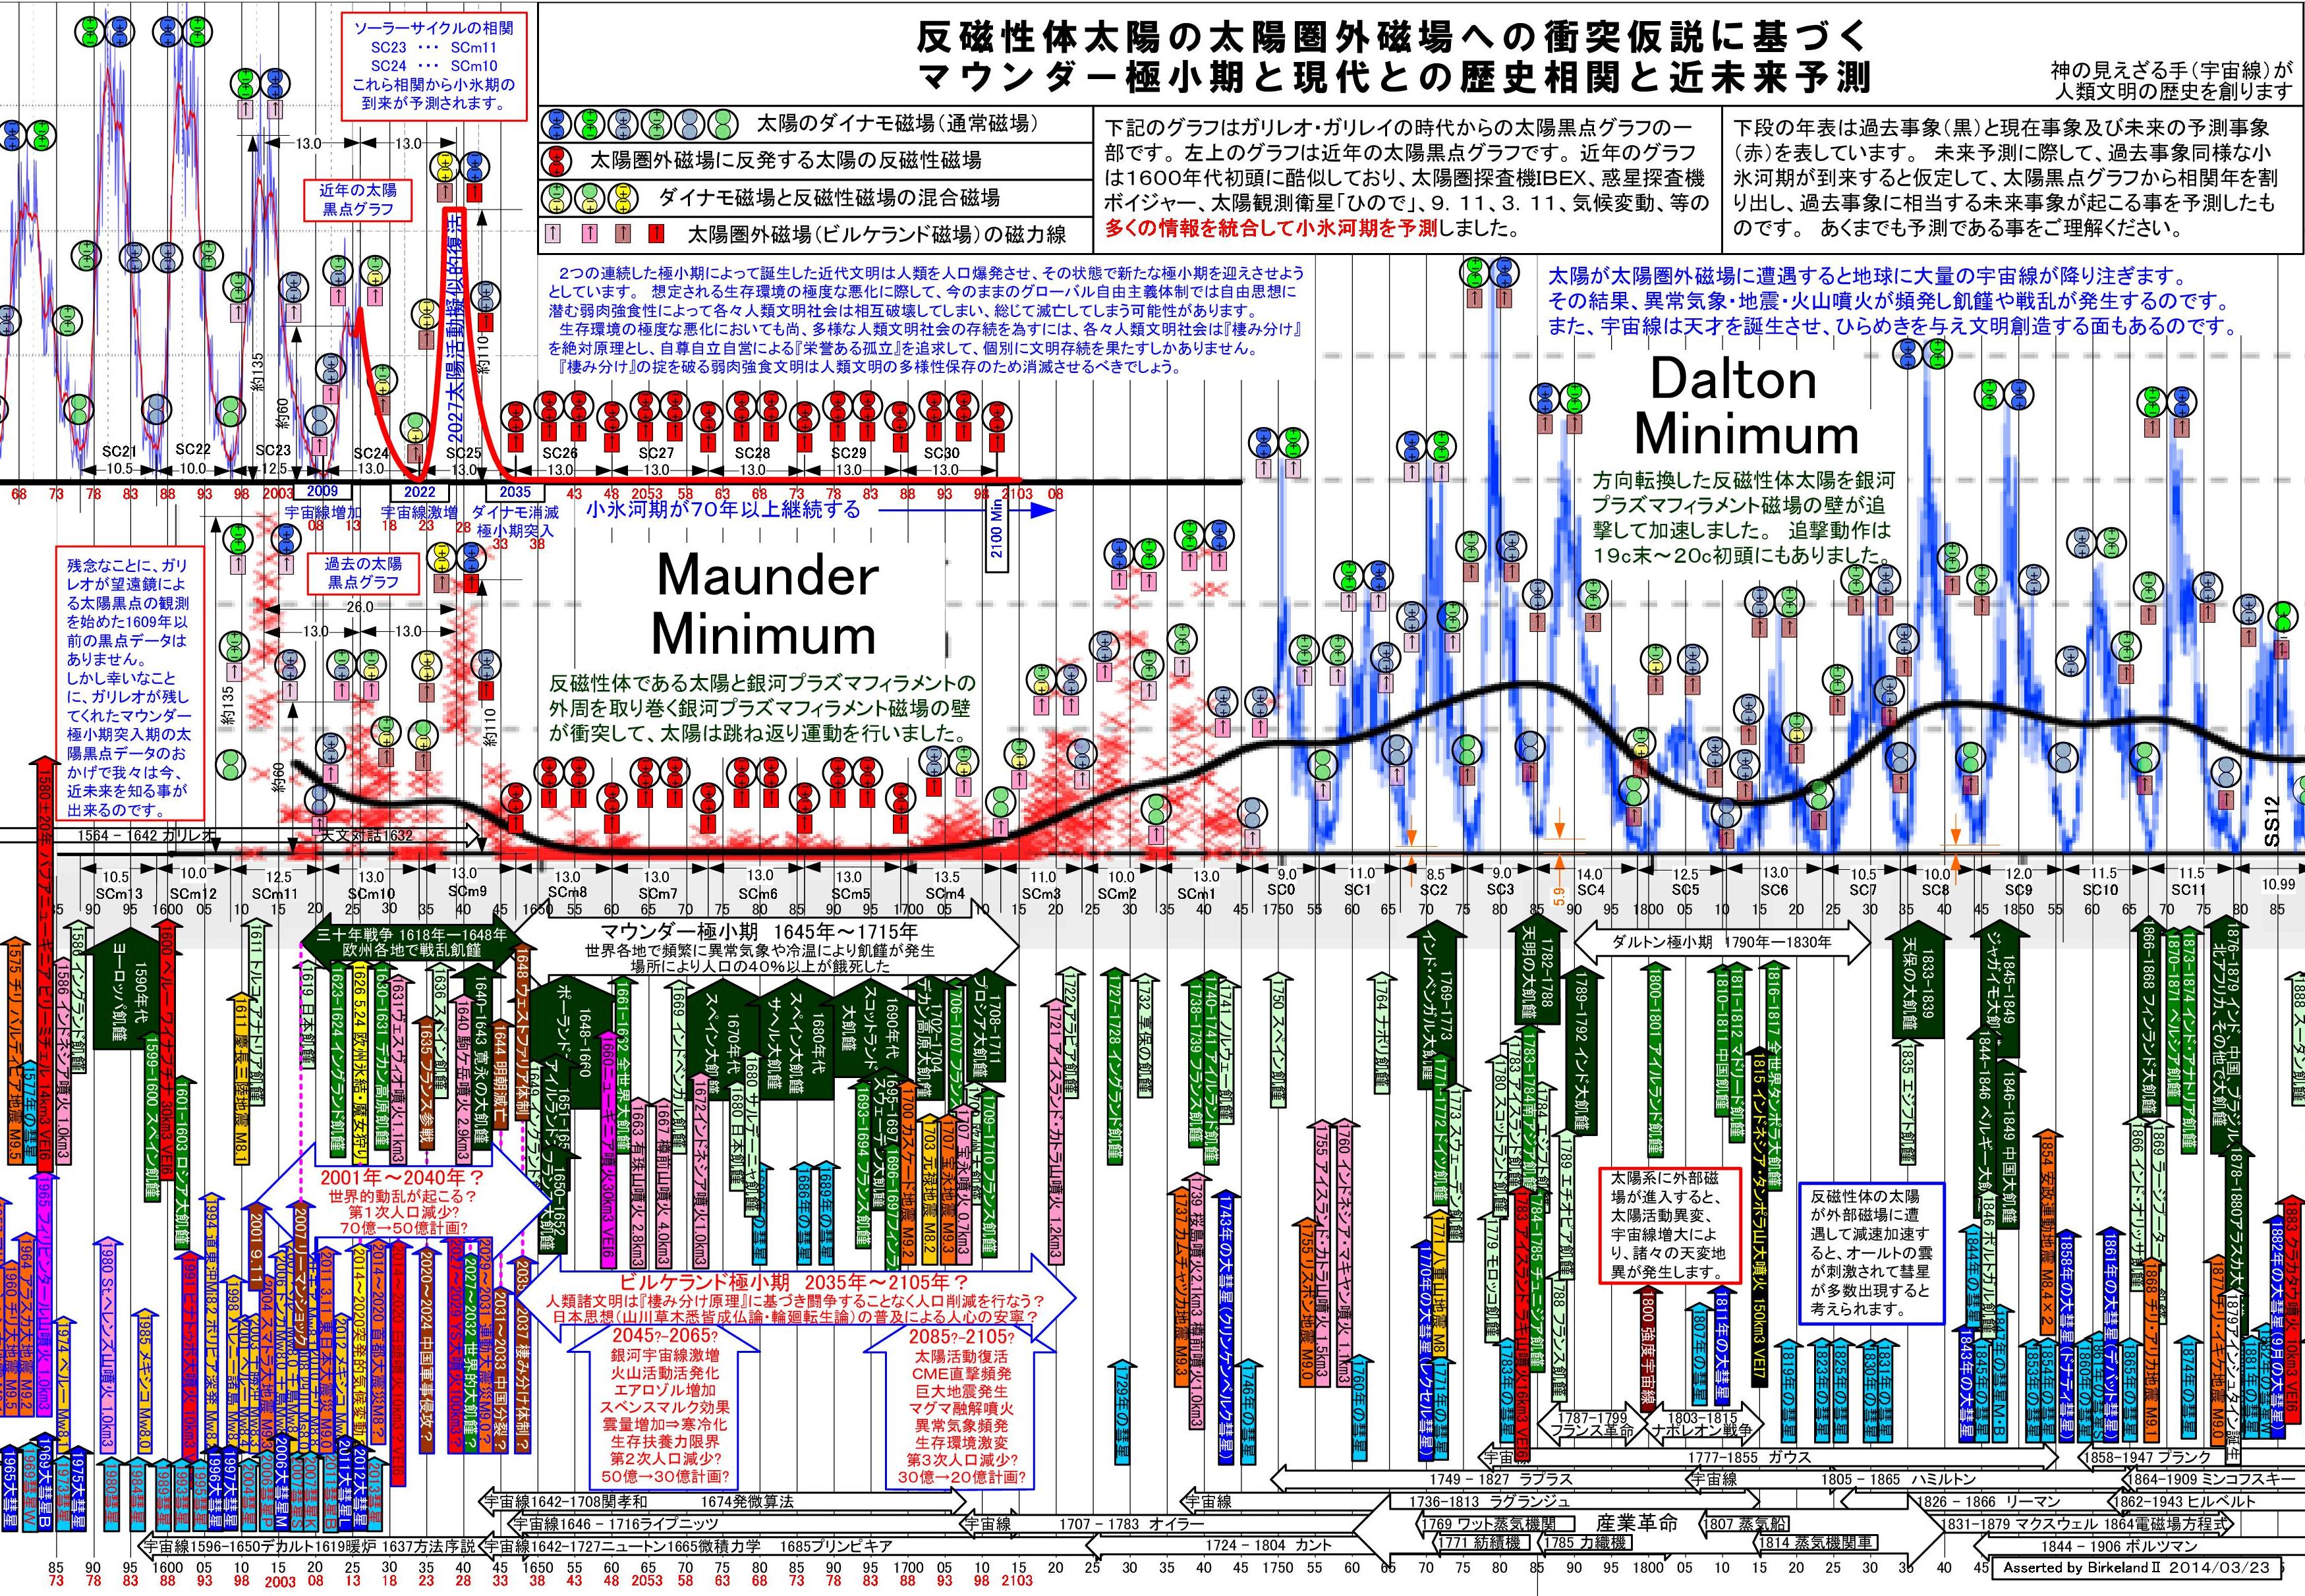 マウンダー極小期と現代との歴史相関SmallIceAgeHistoryCorrelationDiagram.jpg